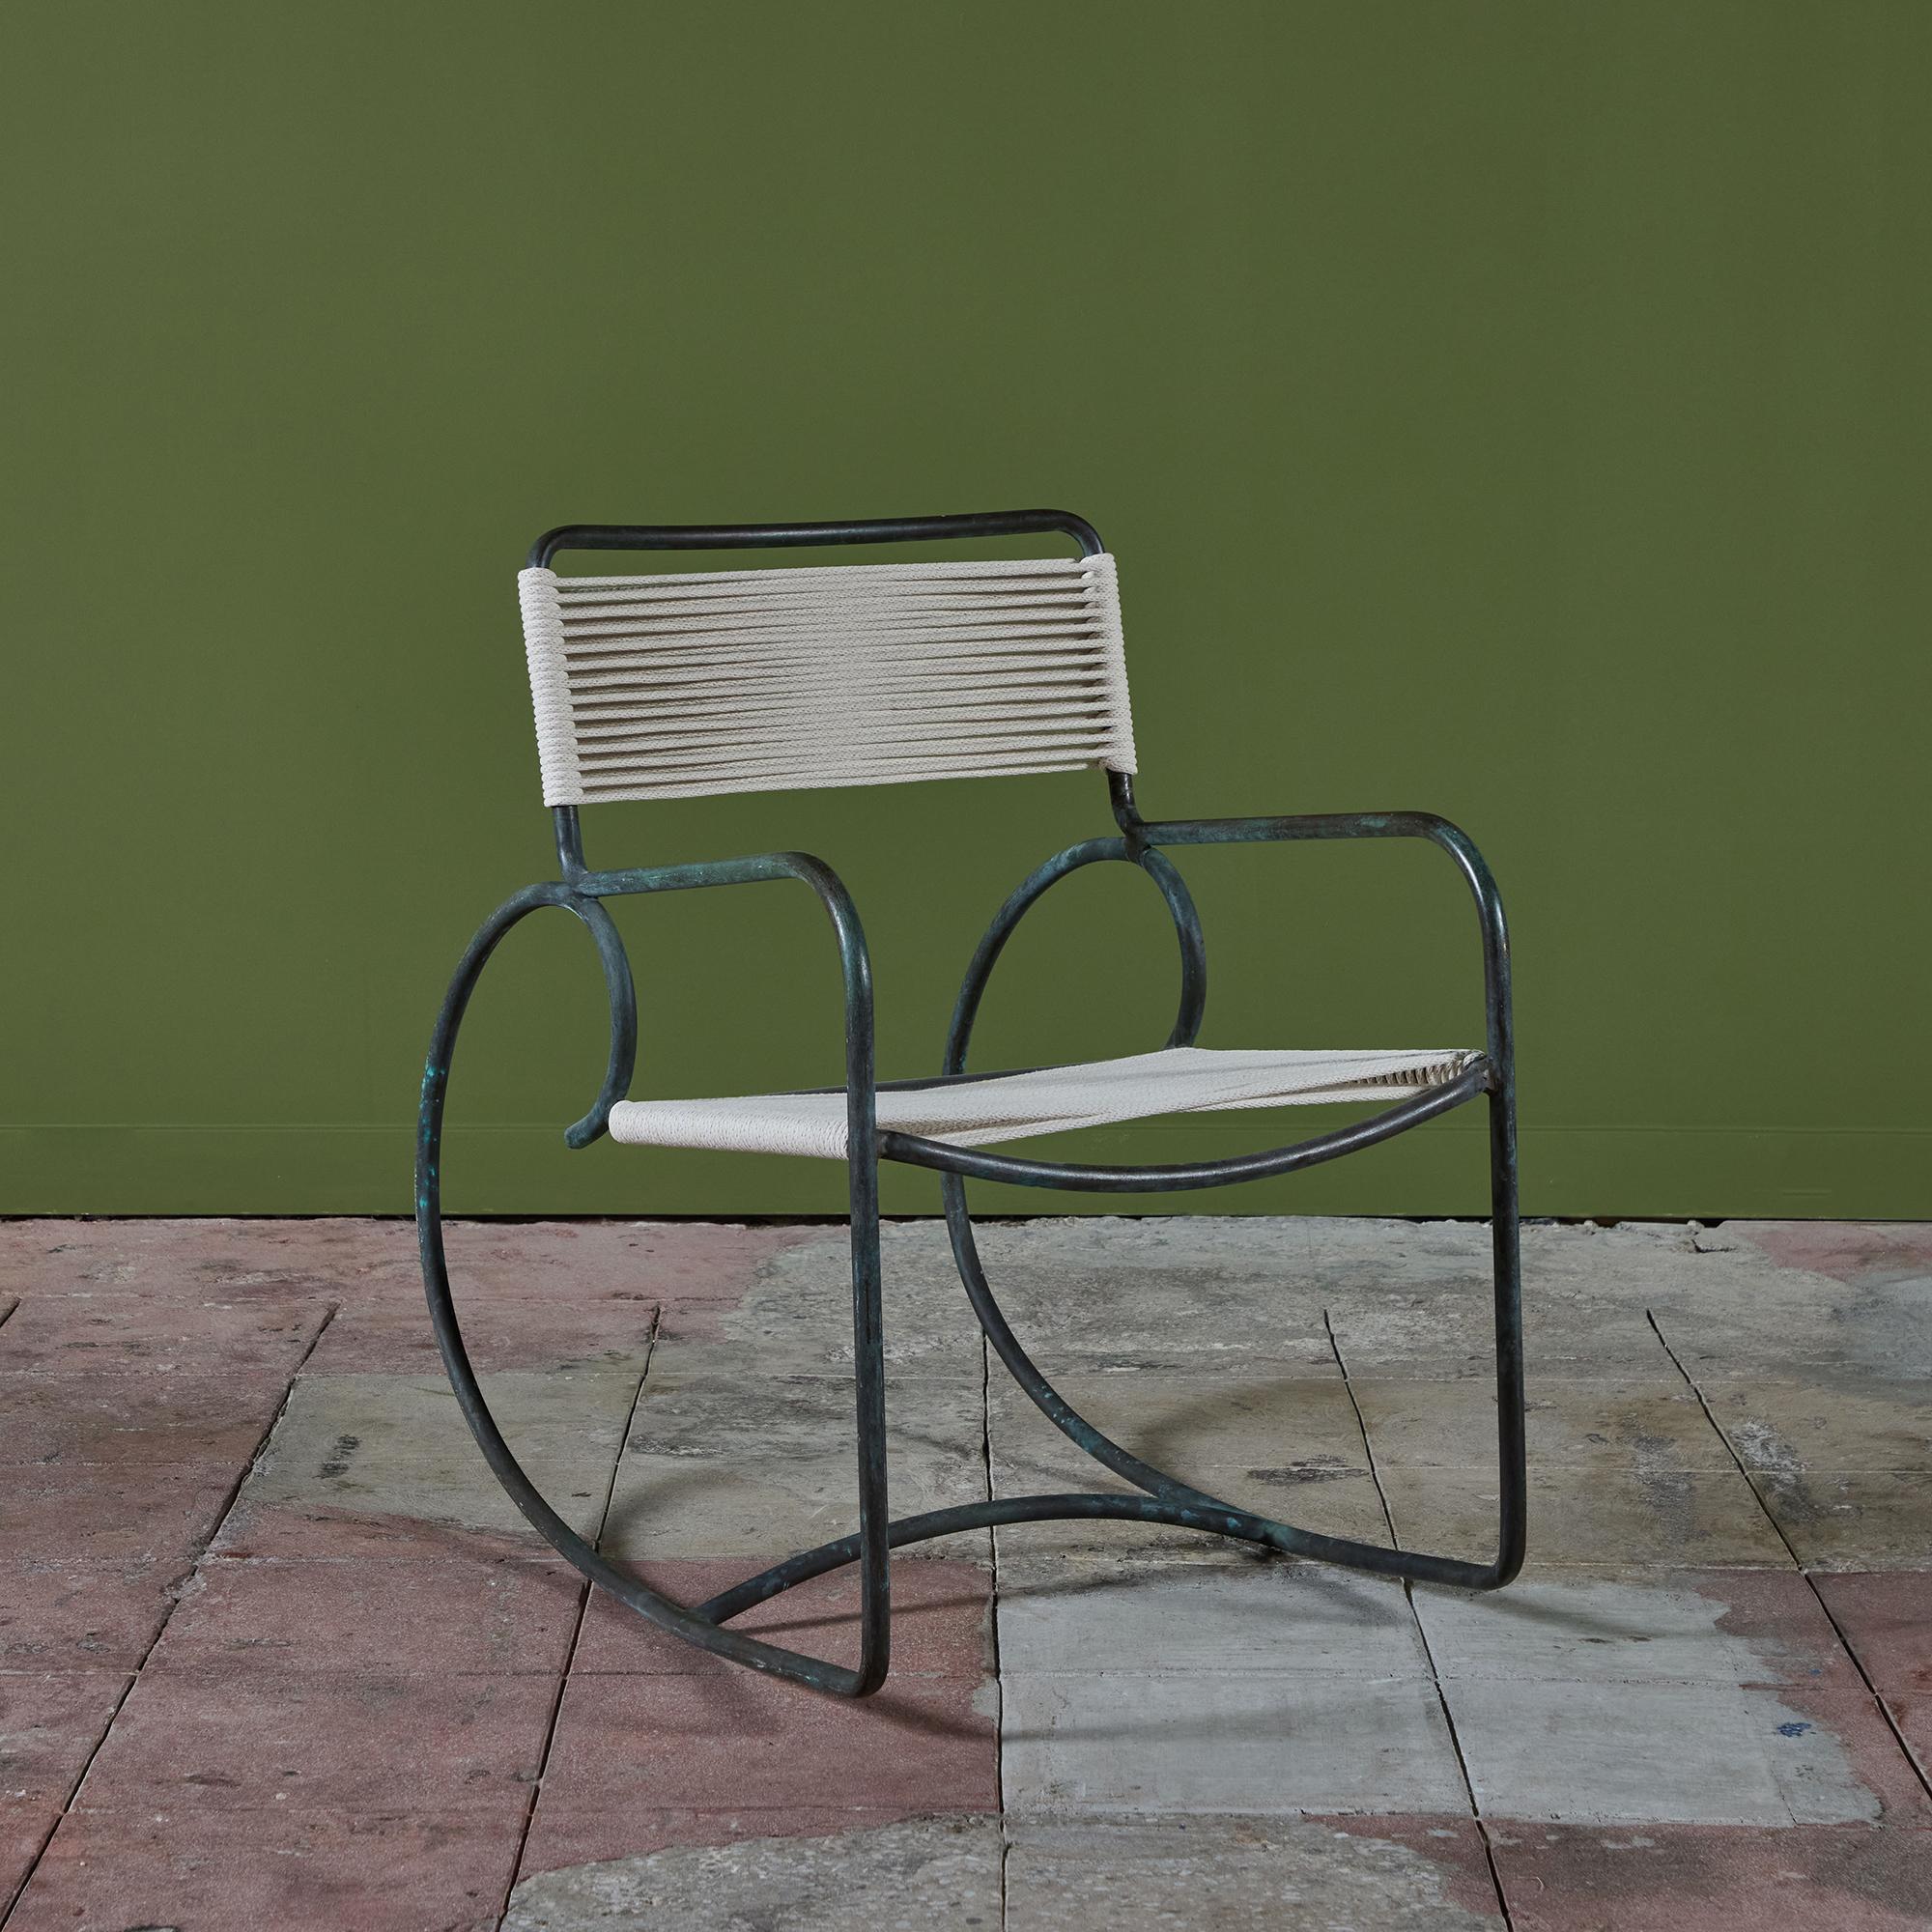 Fauteuil à bascule en bronze conçu par Walter Design/One et produit par Brown Jordan. La chaise a une forme sculpturale, avec une seule formation de bronze tubulaire formant le dossier, les bras, les patins ronds exagérés, avec une boucle